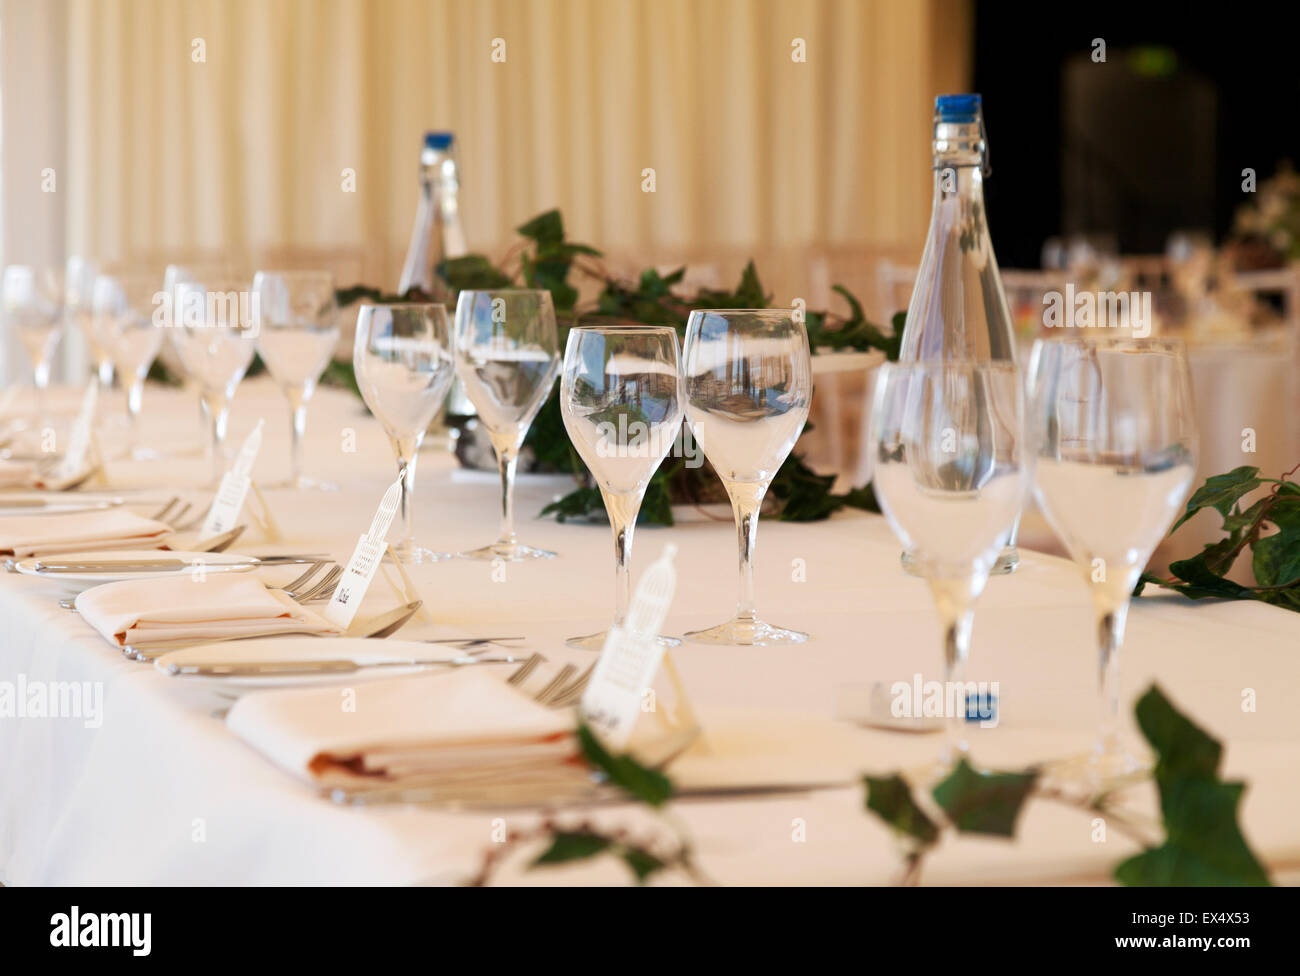 Tische gedeckt mit Besteck und Gläser für eine Hochzeitsfeier, UK Stockfoto